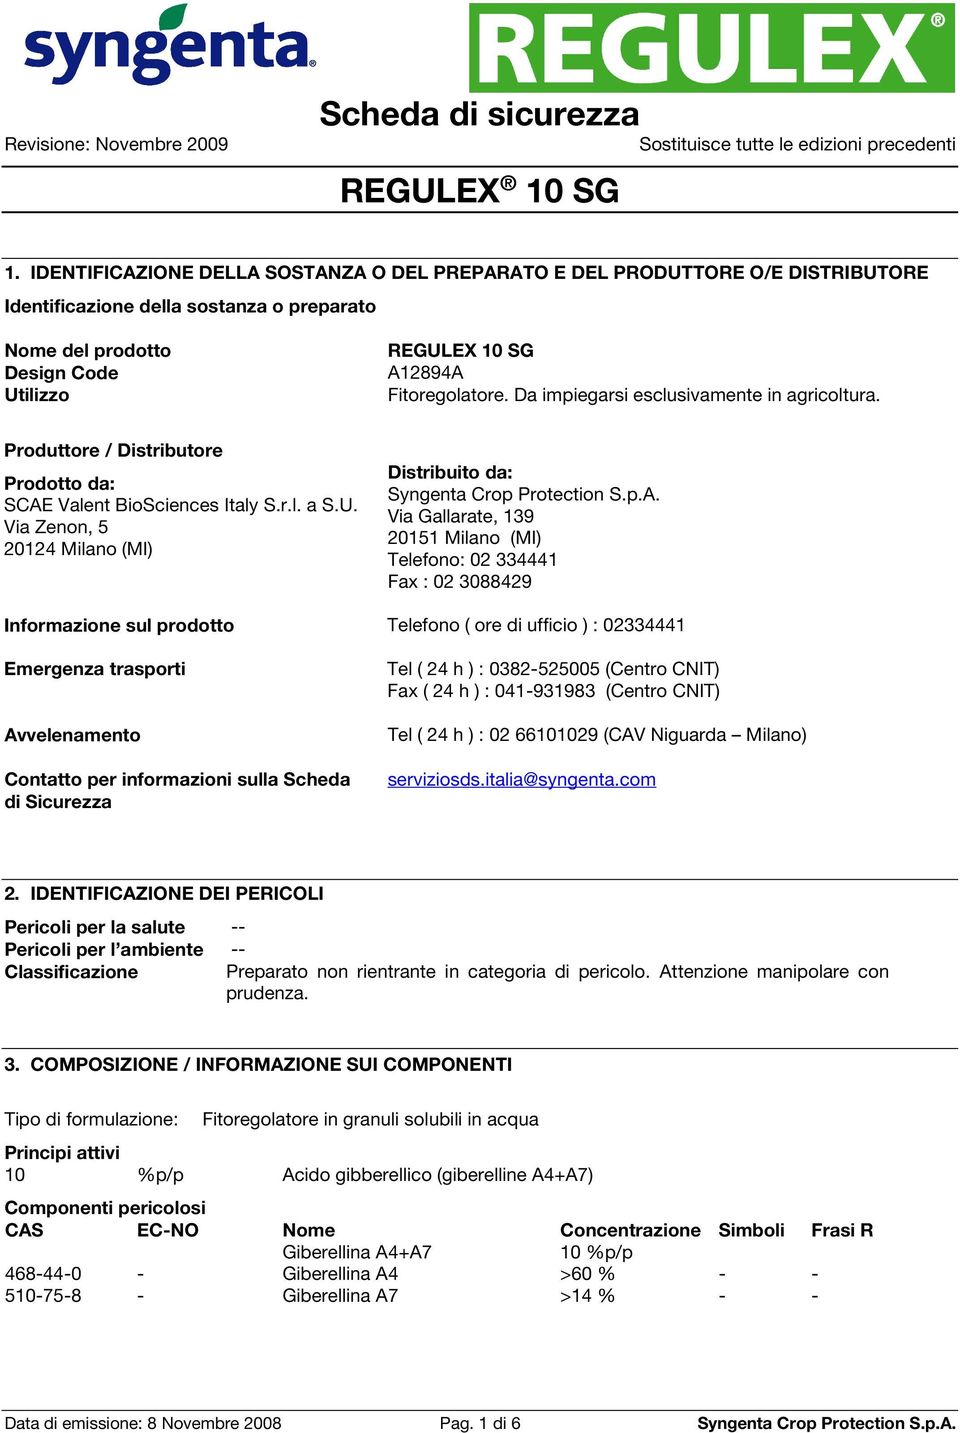 Via Zenon, 5 20124 Milano (MI) Distribuito da: Via Gallarate, 139 20151 Milano (MI) Telefono: 02 334441 Fax : 02 3088429 Informazione sul prodotto Telefono ( ore di ufficio ) : 02334441 Emergenza